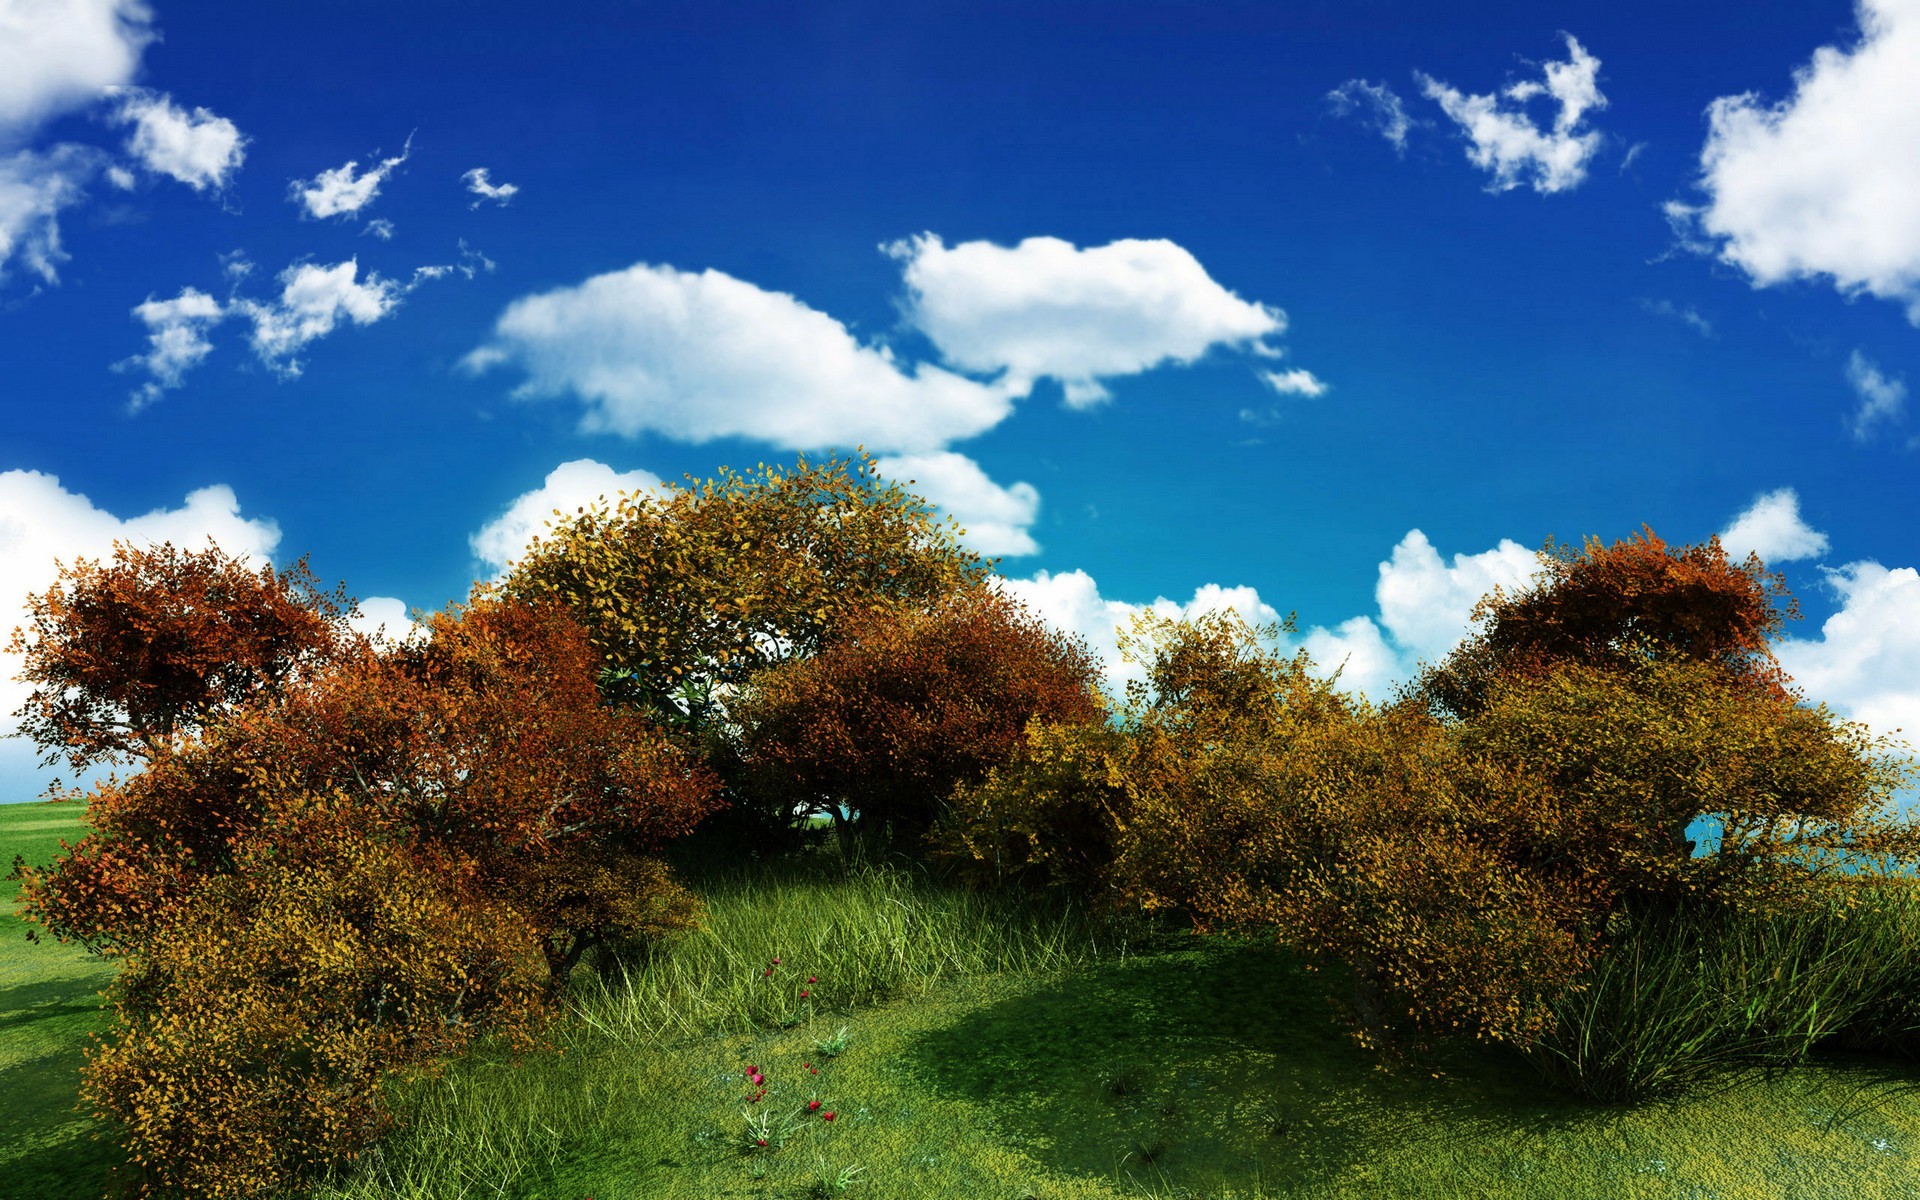 Скачать обои бесплатно Деревья, Небо, Облака, Цветок, Дерево, Поле, Луга, Ландшафт, Фотография, Земля/природа картинка на рабочий стол ПК